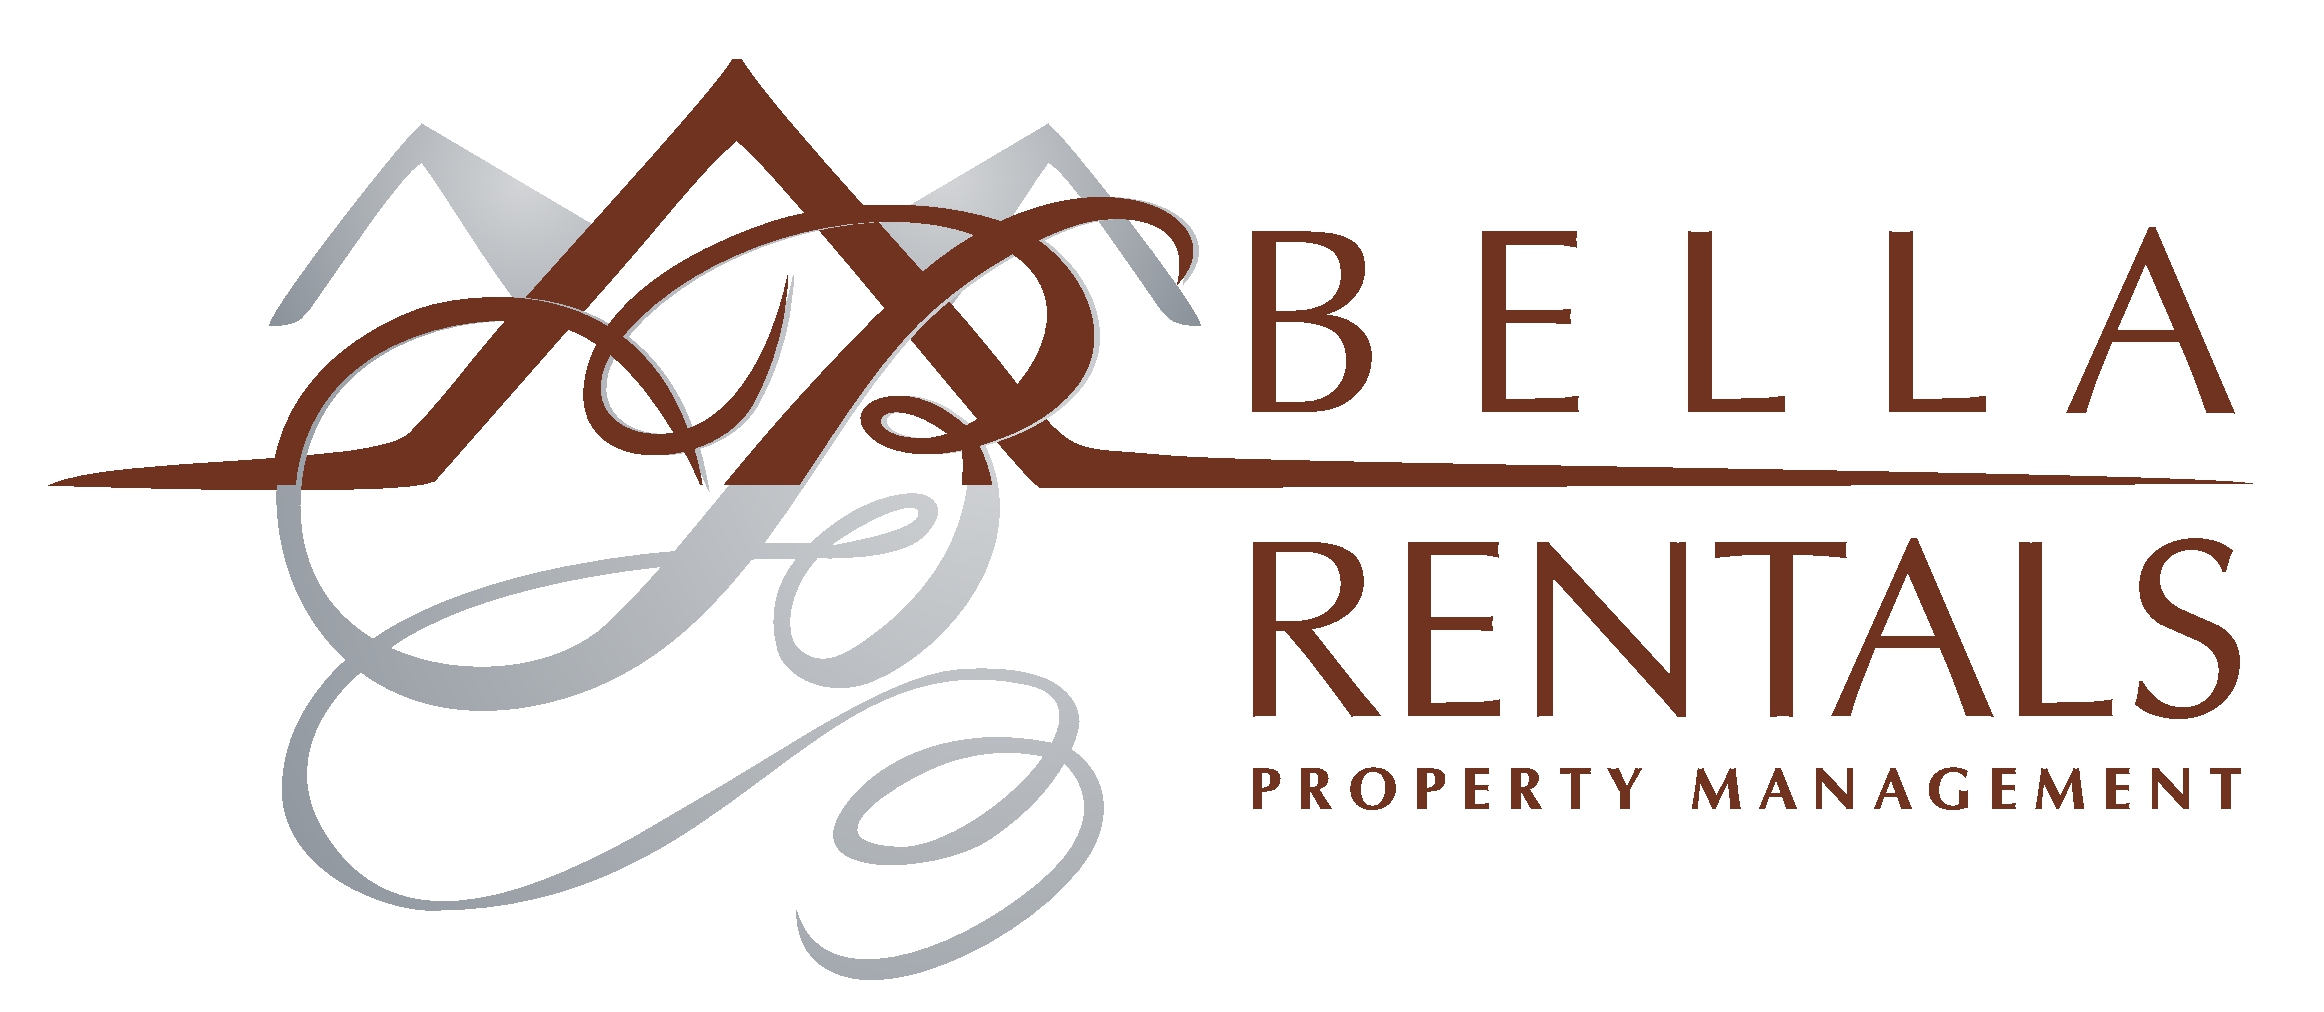 Bella Rentals Property Managment LIC#01860804